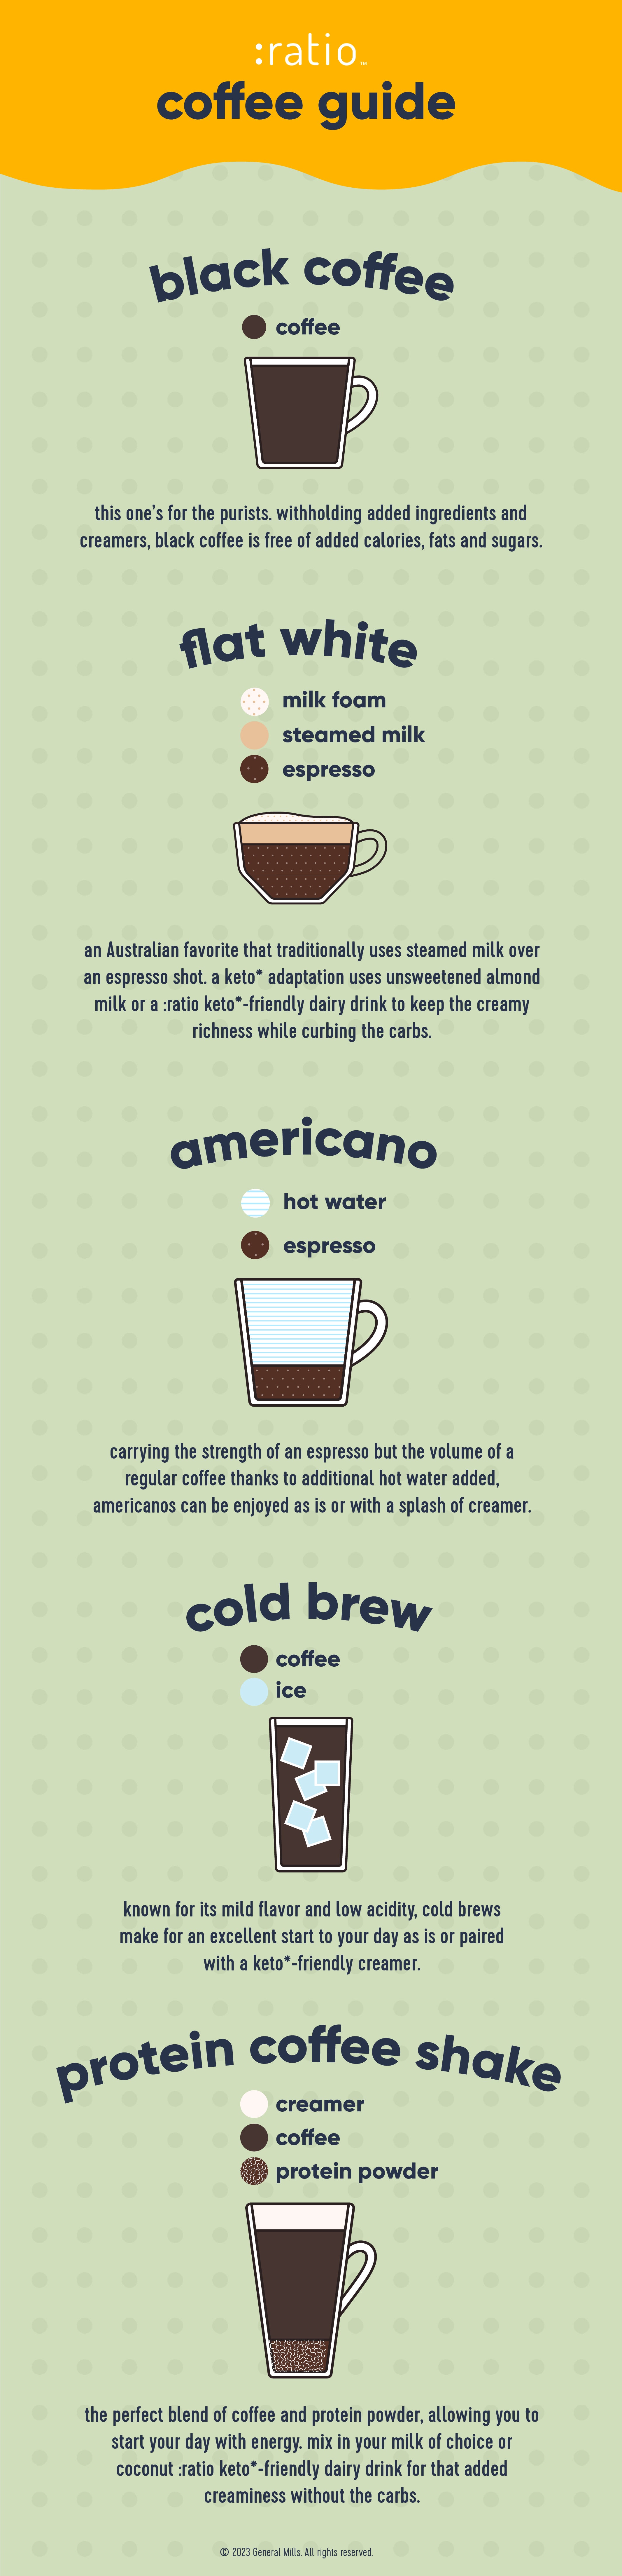 keto*-friendly coffee creations